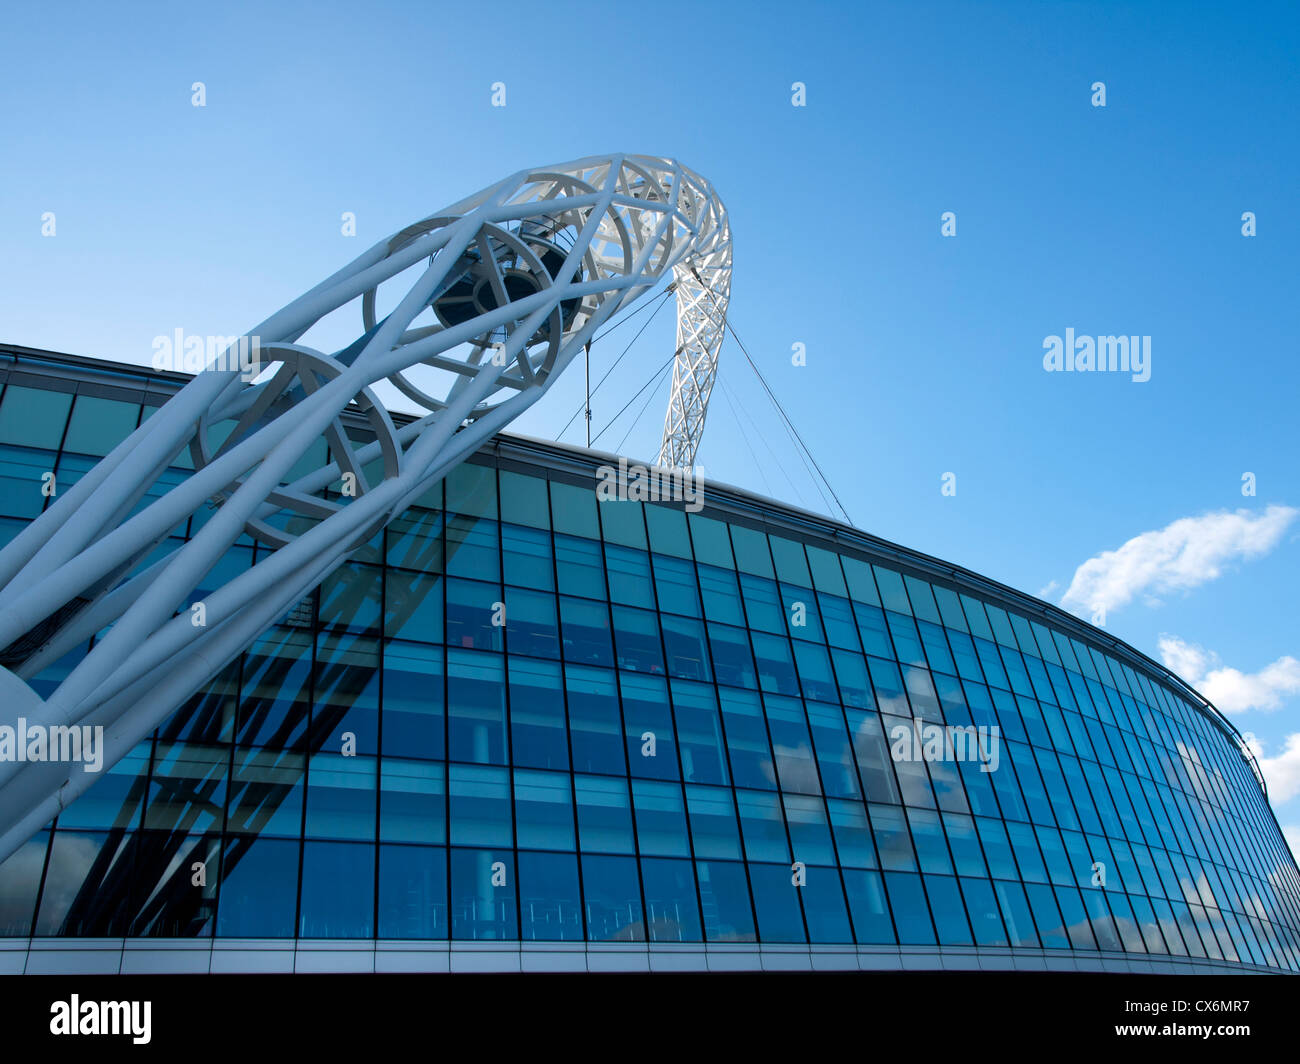 Wembley Stadium arch on Level 1 concourse, Wembley, London, England, United Kingdom Stock Photo